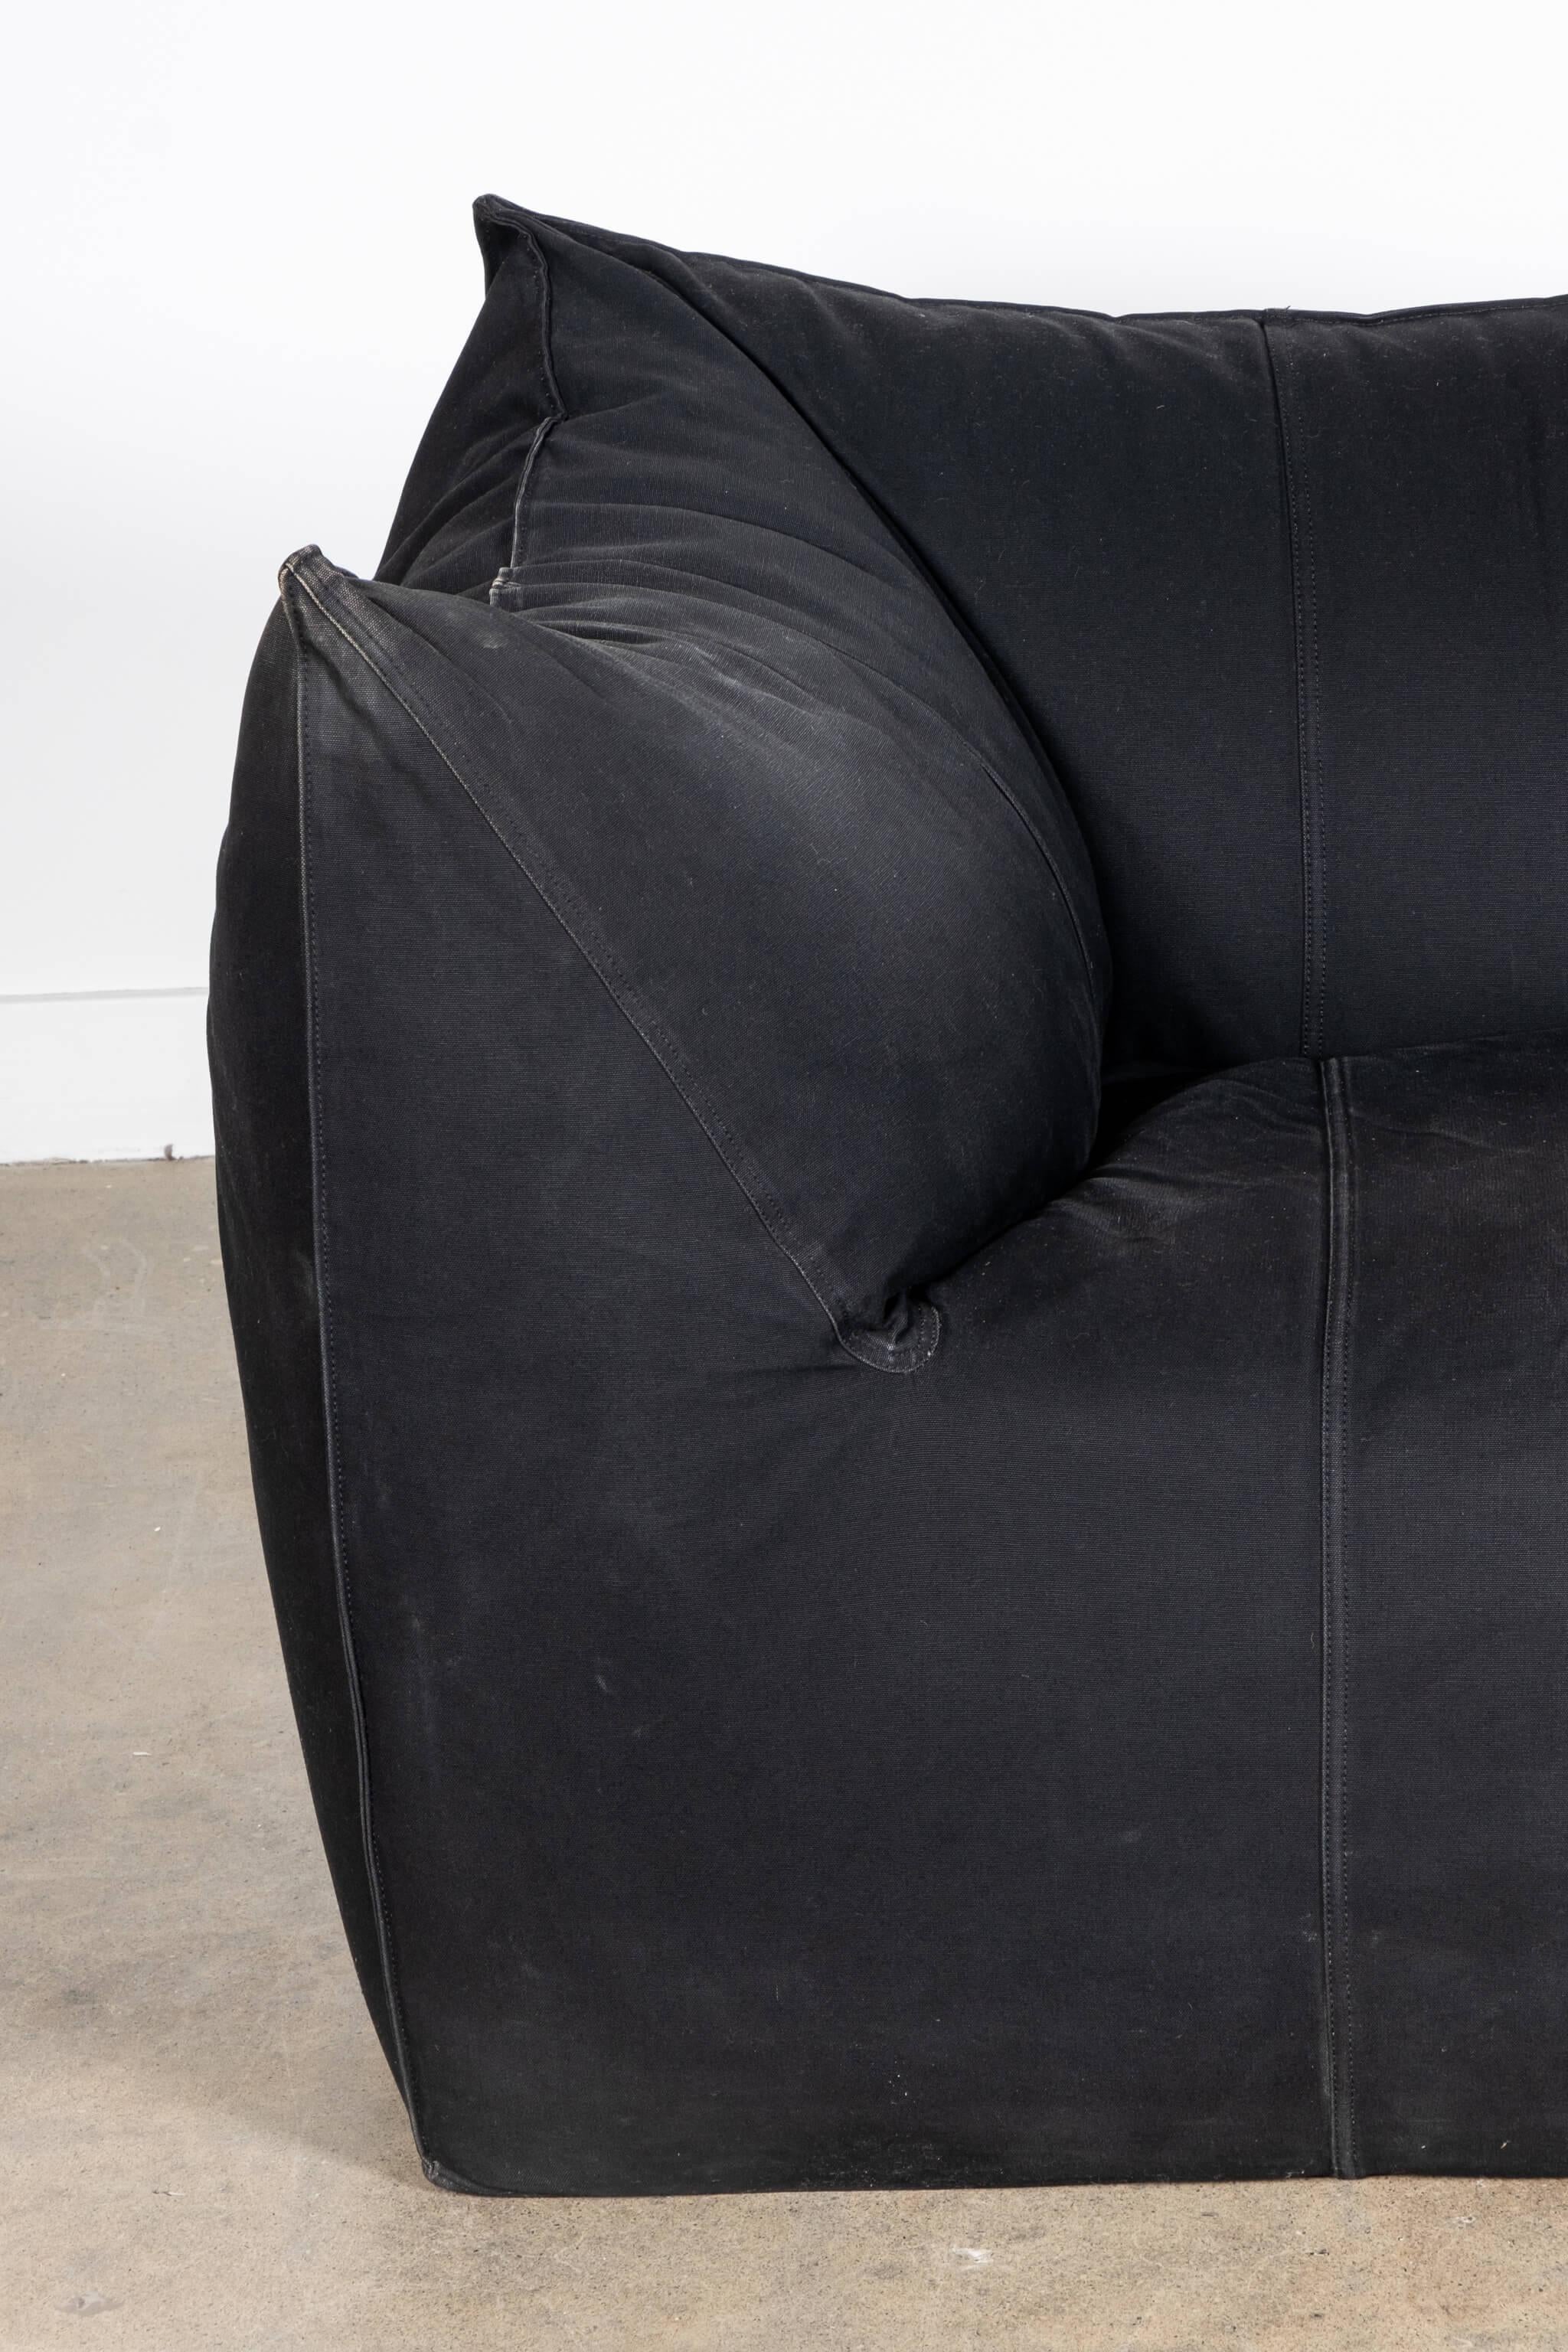 Mario Bellini Le Bambole 2-Seater Sofa, B&B Italia In Good Condition For Sale In Toronto, CA